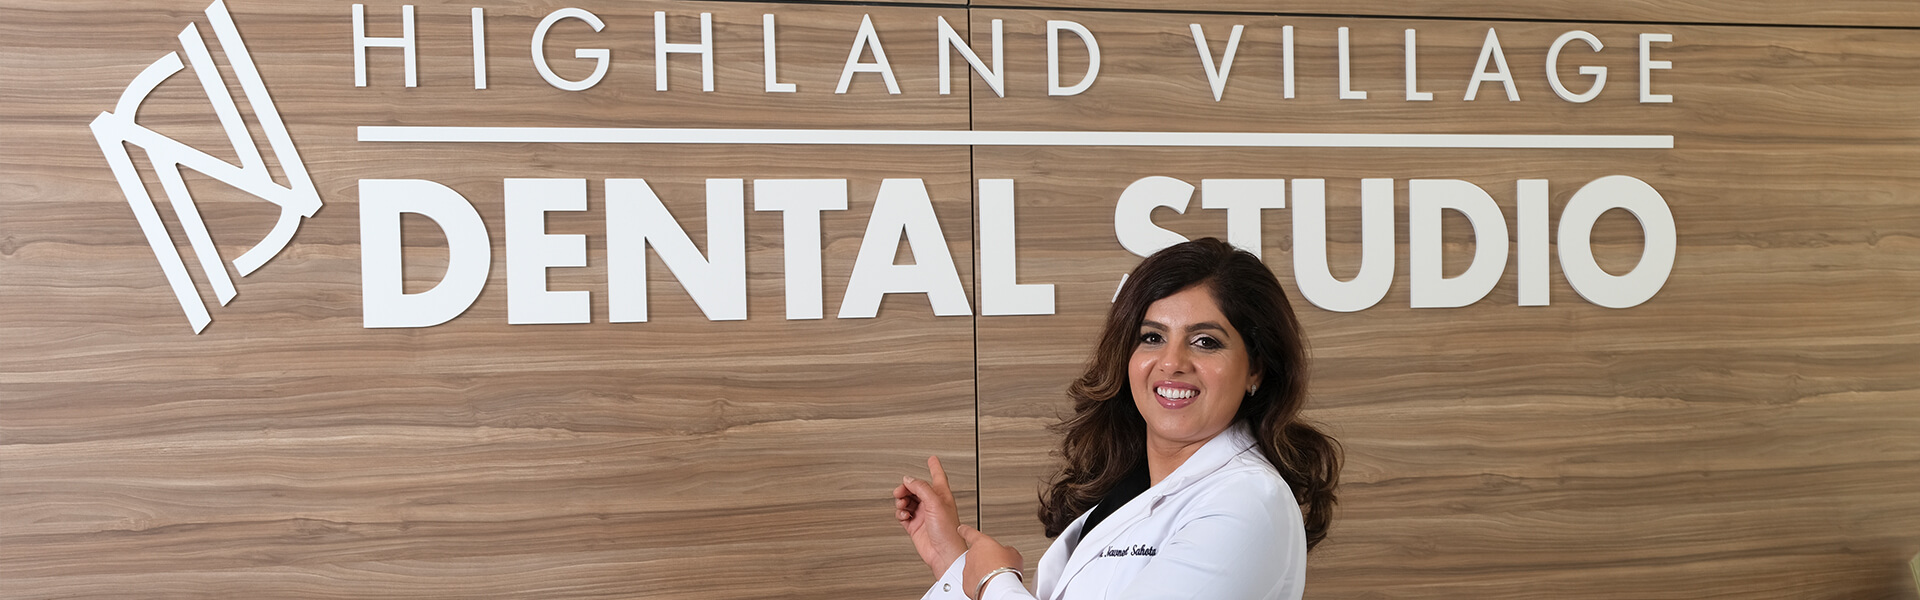 banner dr Highland Village Dental Studio